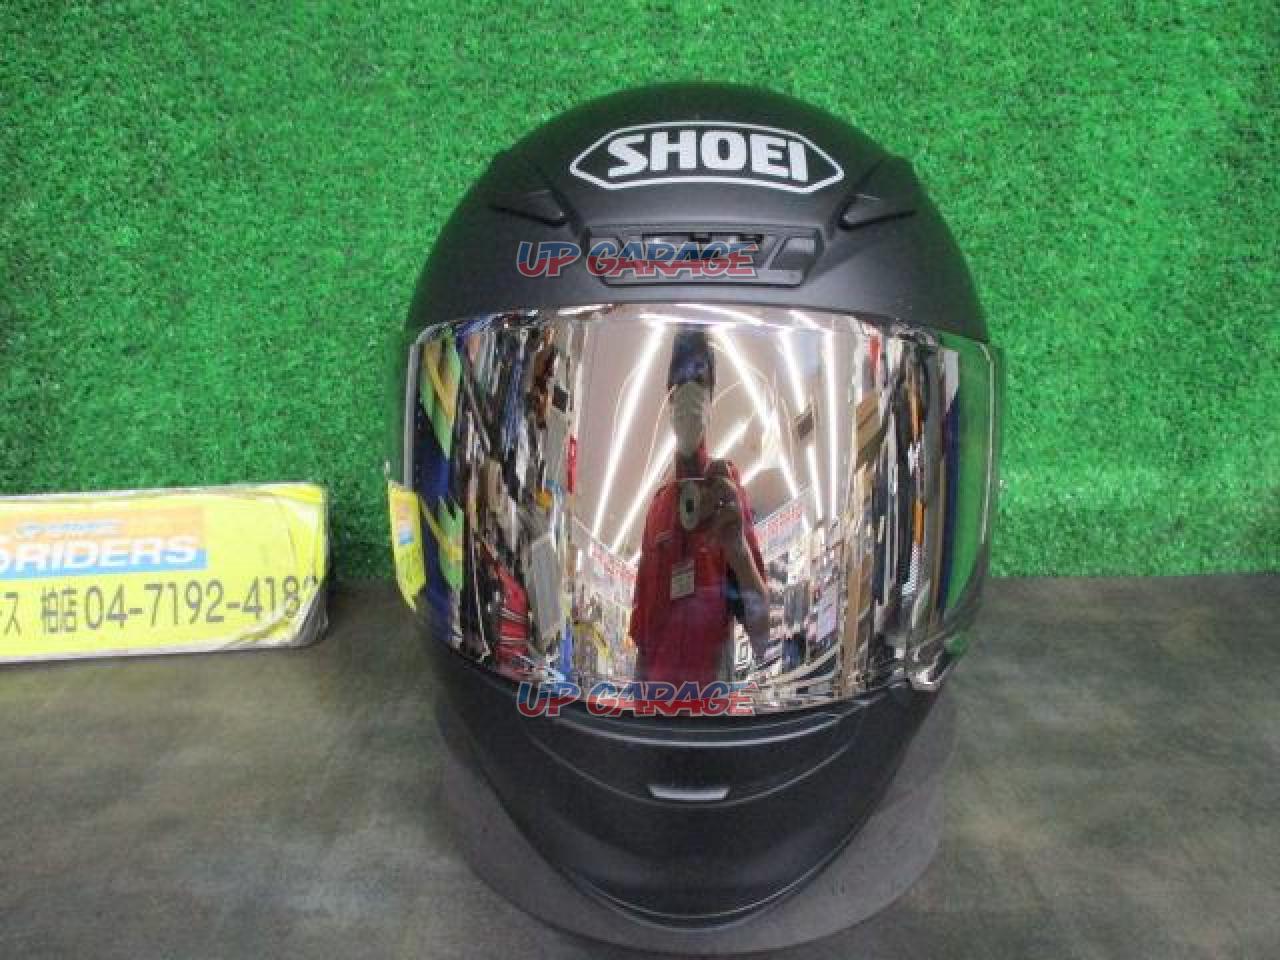 SHOEI Z-7 フルフェイス ヘルメット マットブラック Mサイズカラーはマットブラックです